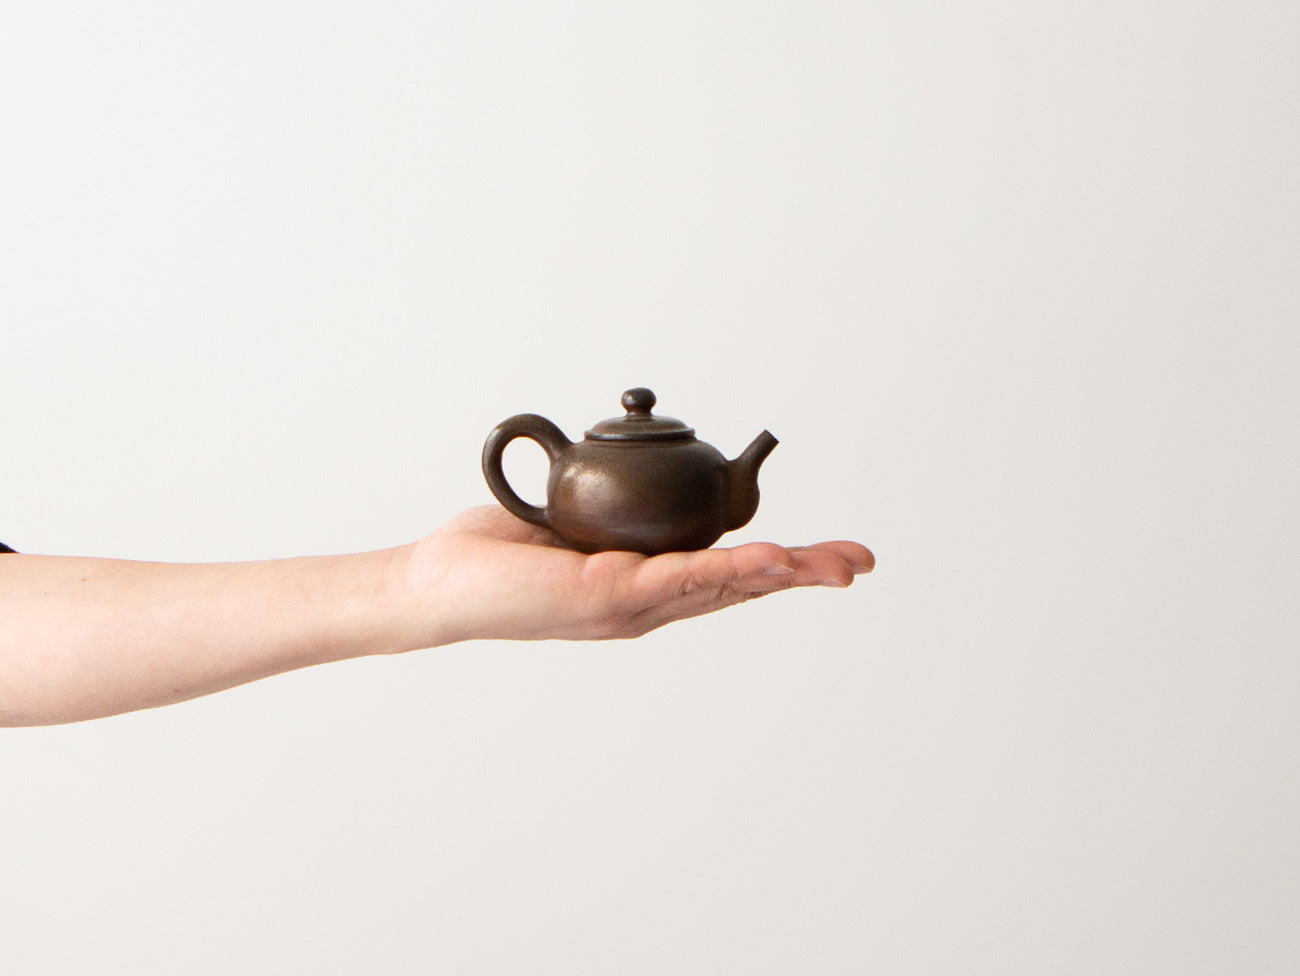 Rust Teapot, No. 2